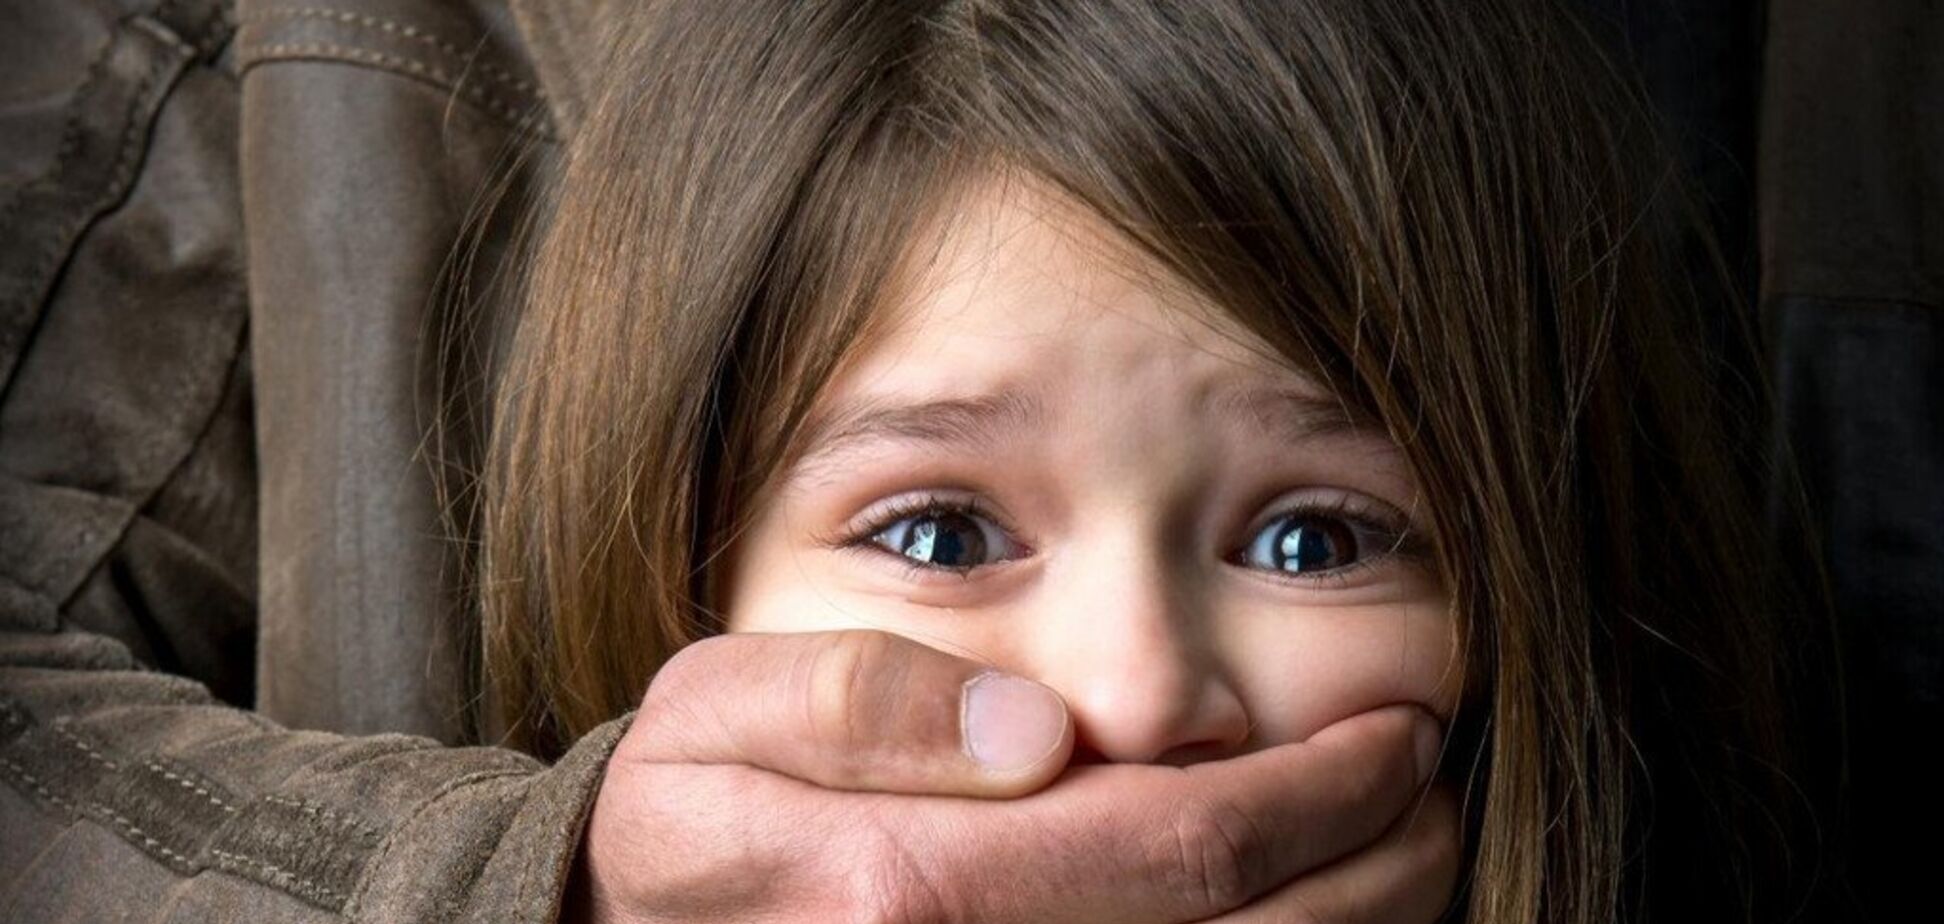 Мать видела и молчала: в Сумах мужчина изнасиловал 6-летнюю девочку